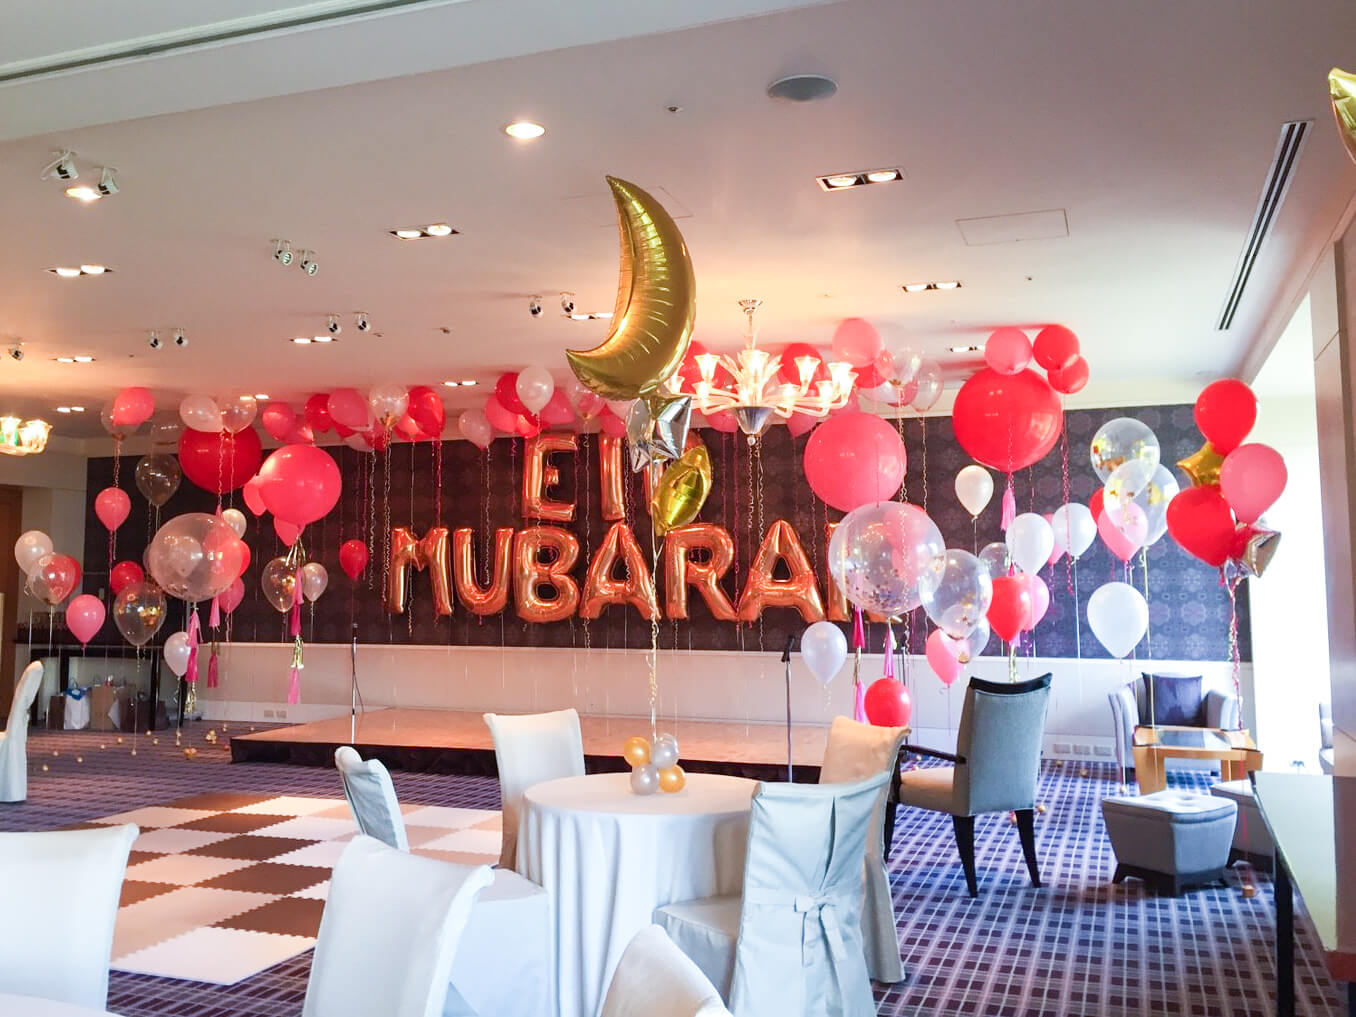 I 19 Eidパーティー リッツ カールトン東京宴会場 バルーン出張装飾 ホテルサプライズ 誕生日やプロポーズはアニプラバルーン